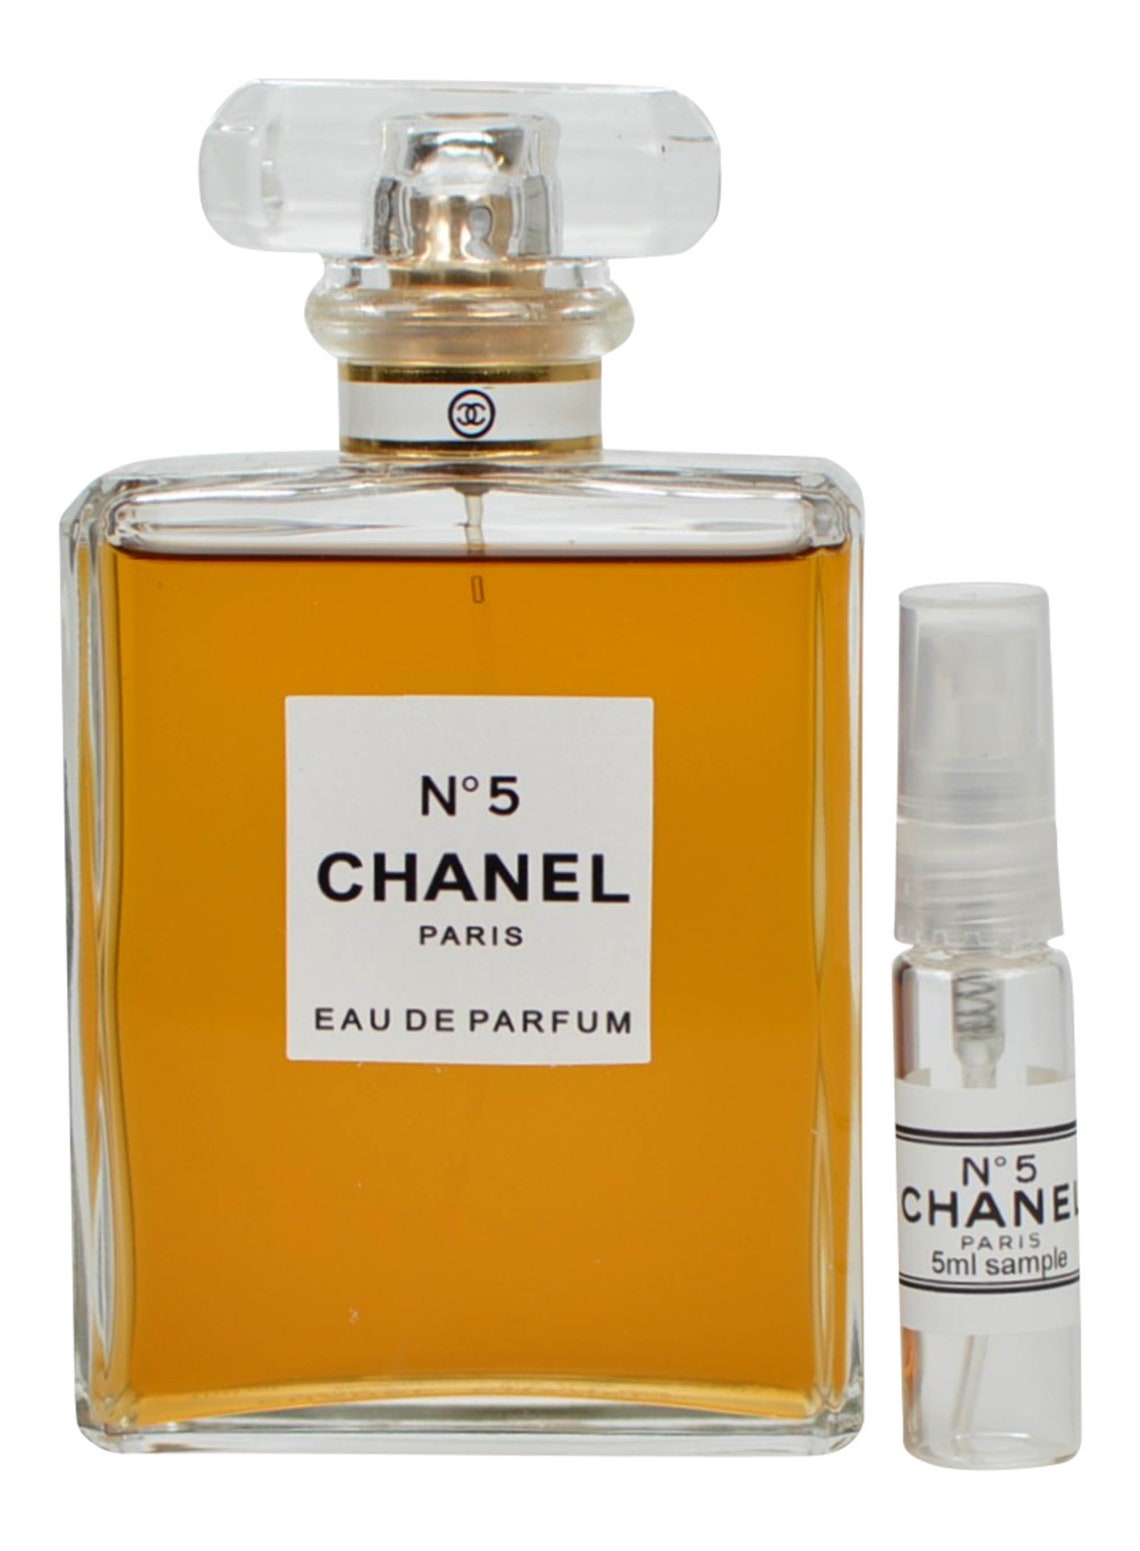 New Chanel No 5 Eau De Parfum Vintage Original For Women